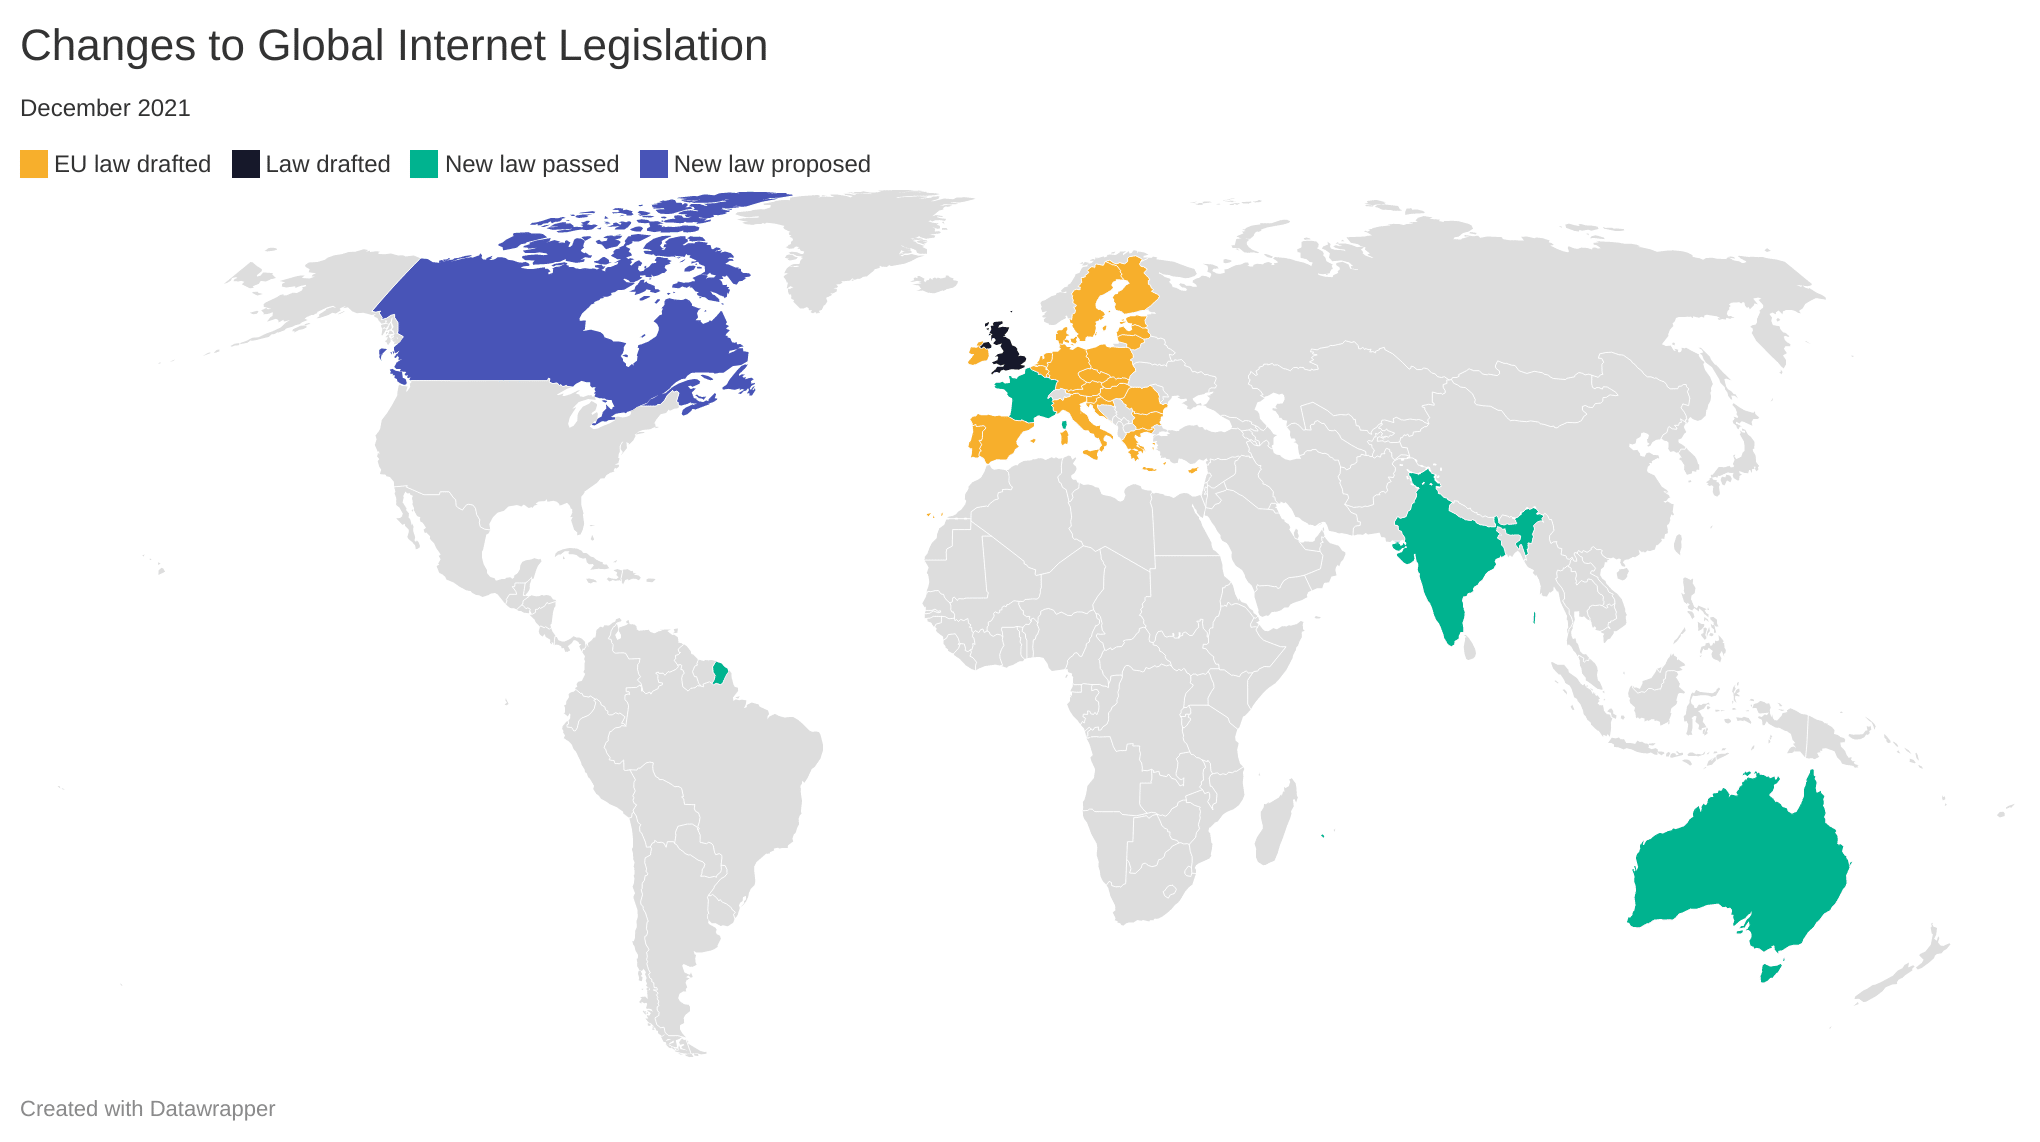 Changes of Global Internet Legislation